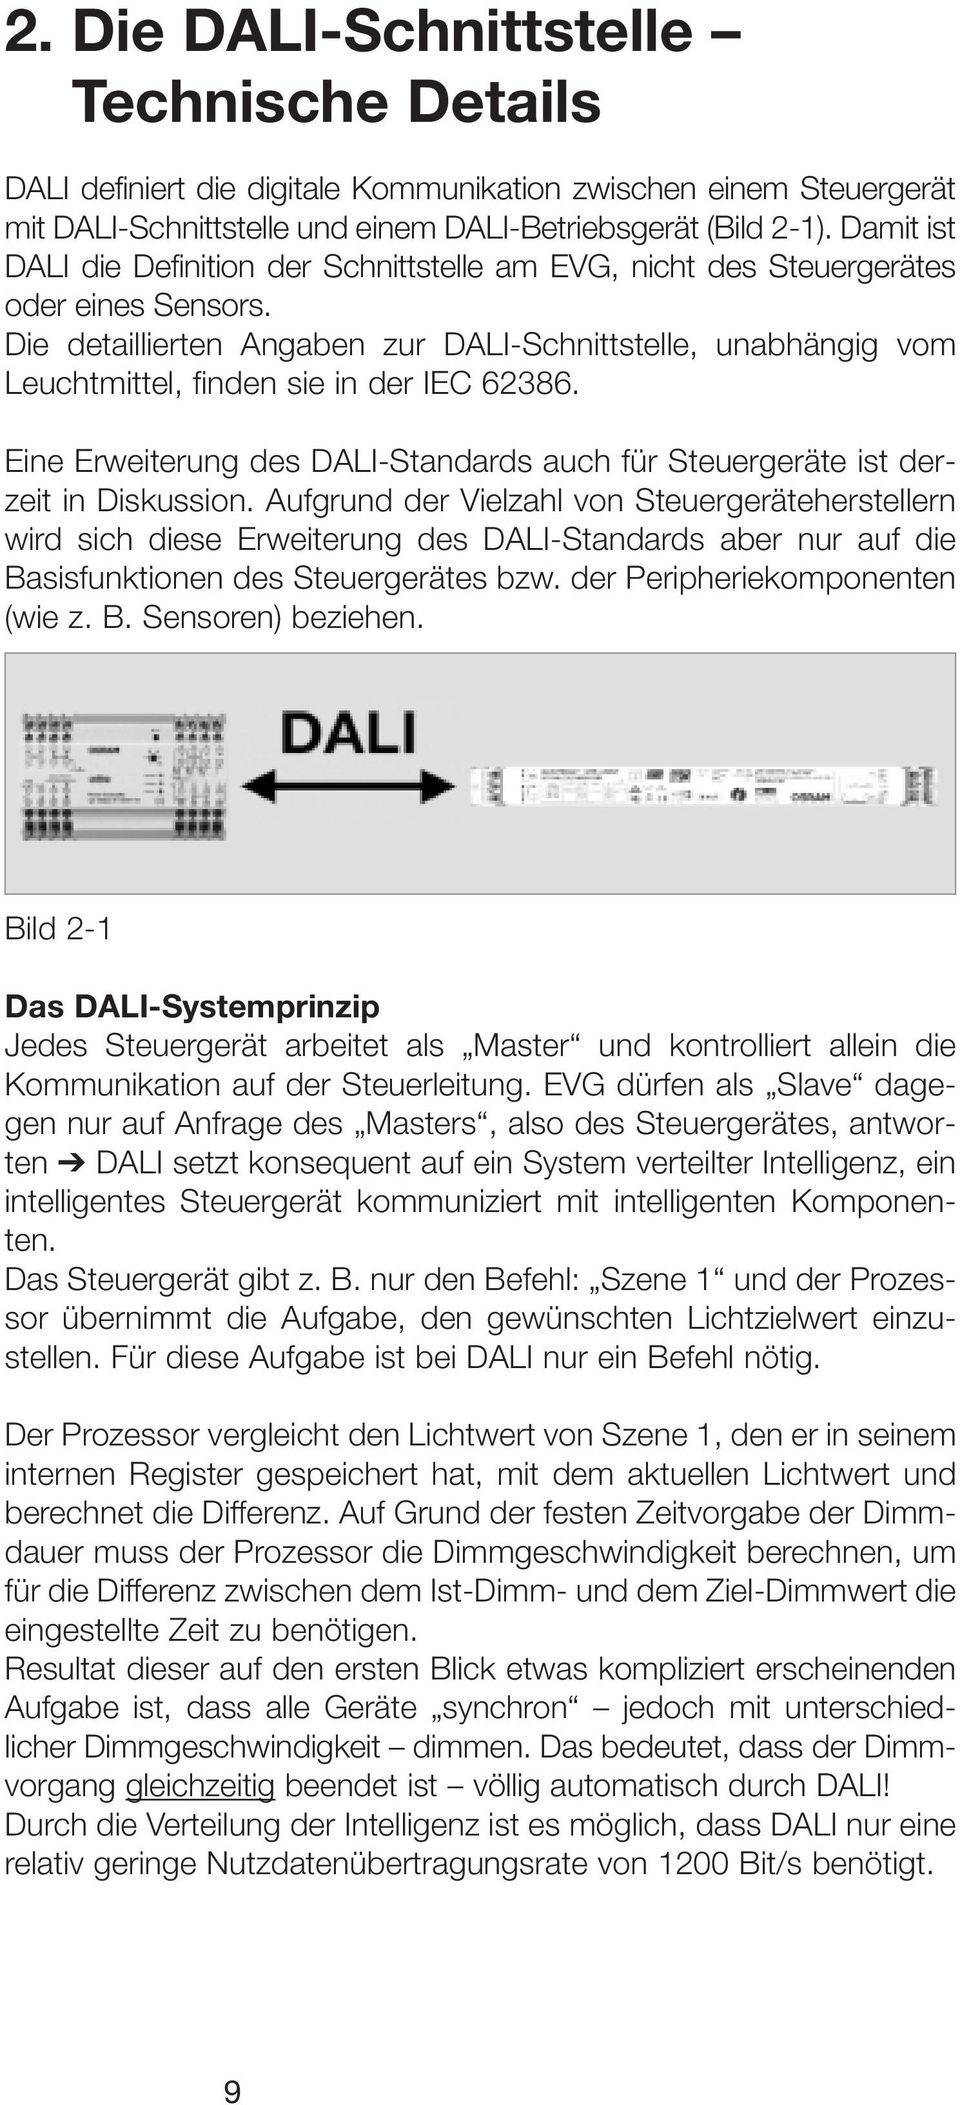 Die detaillierten Angaben zur DALI-Schnittstelle, unabhängig vom Leuchtmittel, finden sie in der IEC 62386. Eine Erweiterung des DALI-Standards auch für Steuergeräte ist derzeit in Diskussion.